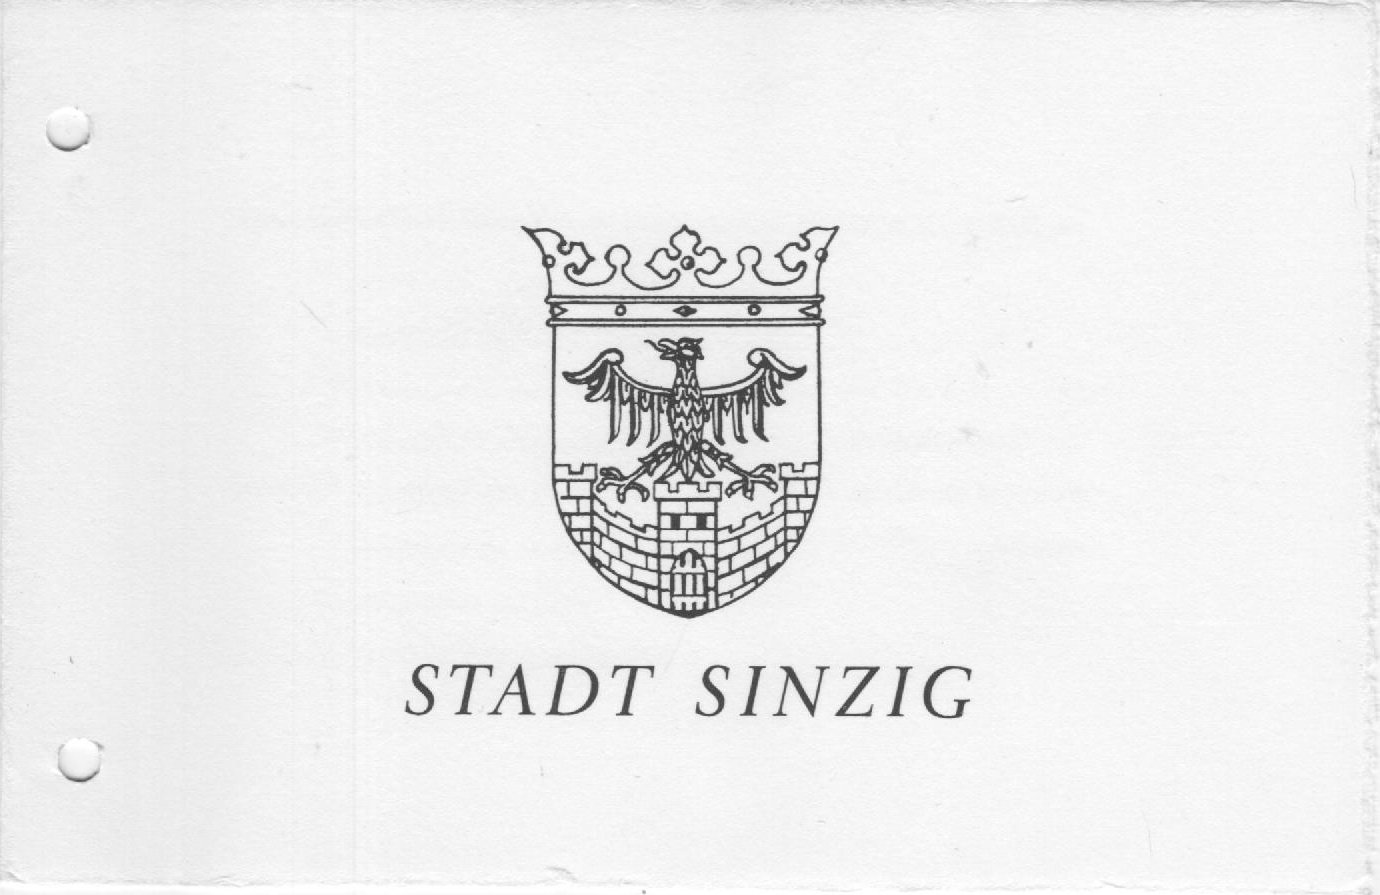 Persönliche Einladungskarte zur Festveranstaltung der Verleihung "Bad" Titel (Stadt Sinzig CC BY-NC-SA)